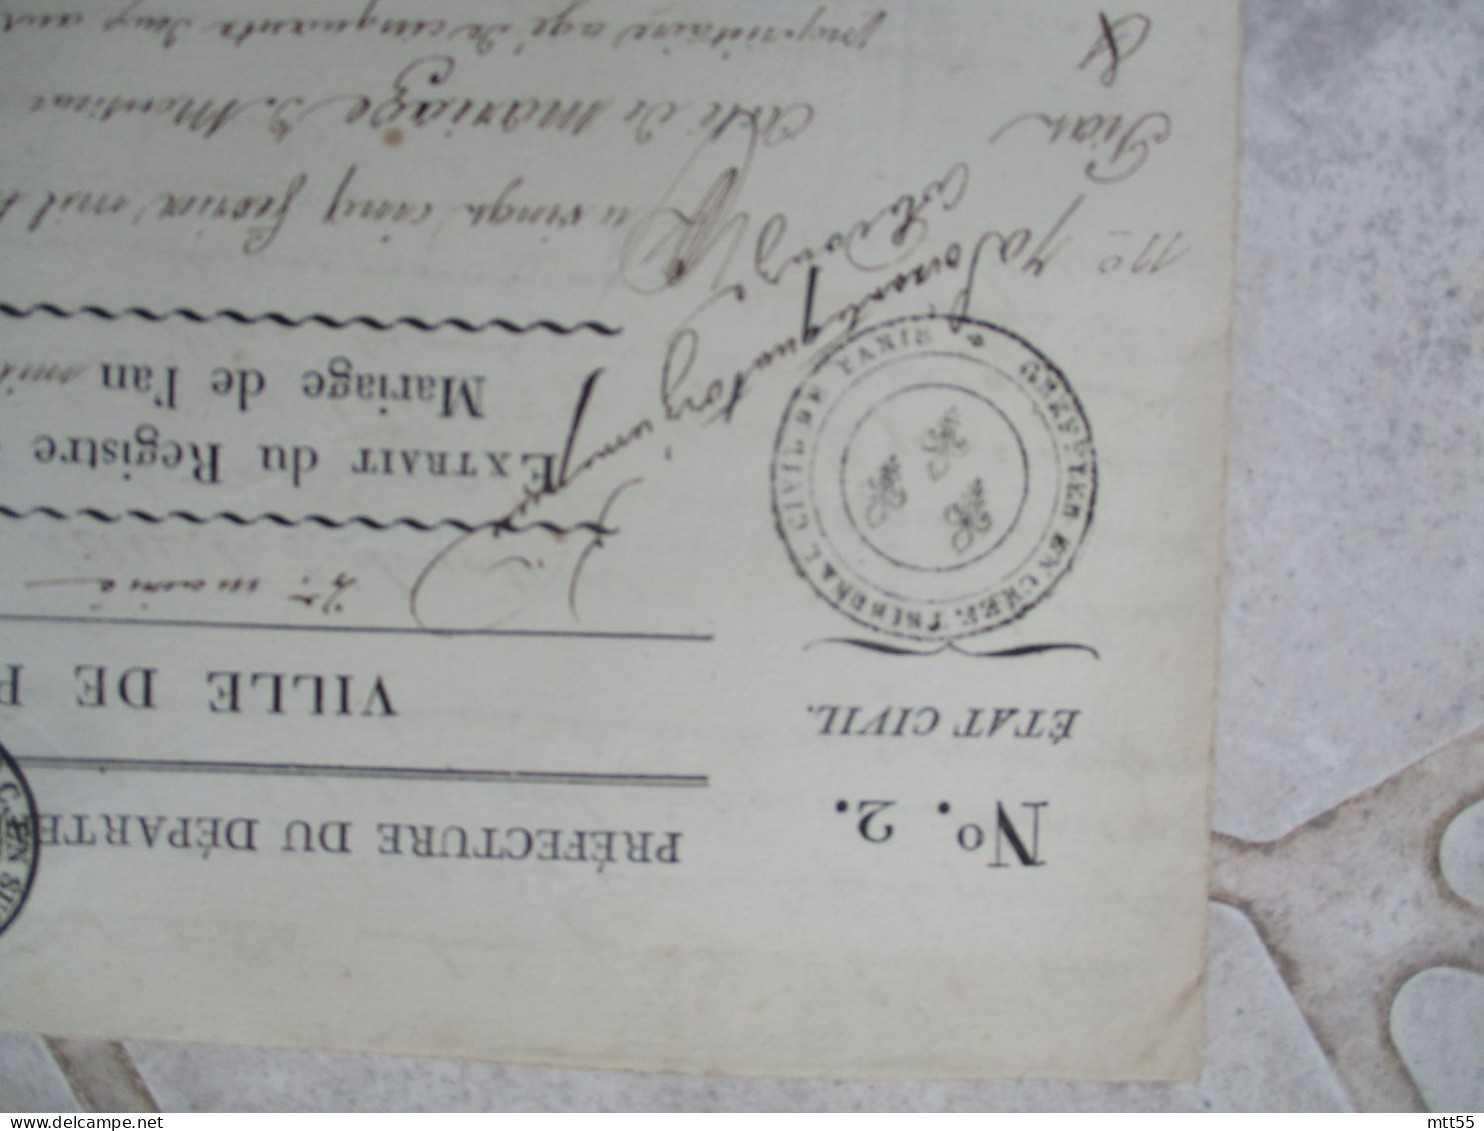 VILLE DE PARIS TIMBRE FISCAL EXTRAIT ACTES DE MARIAGE 1813 MANUSCRIT - Documents Historiques